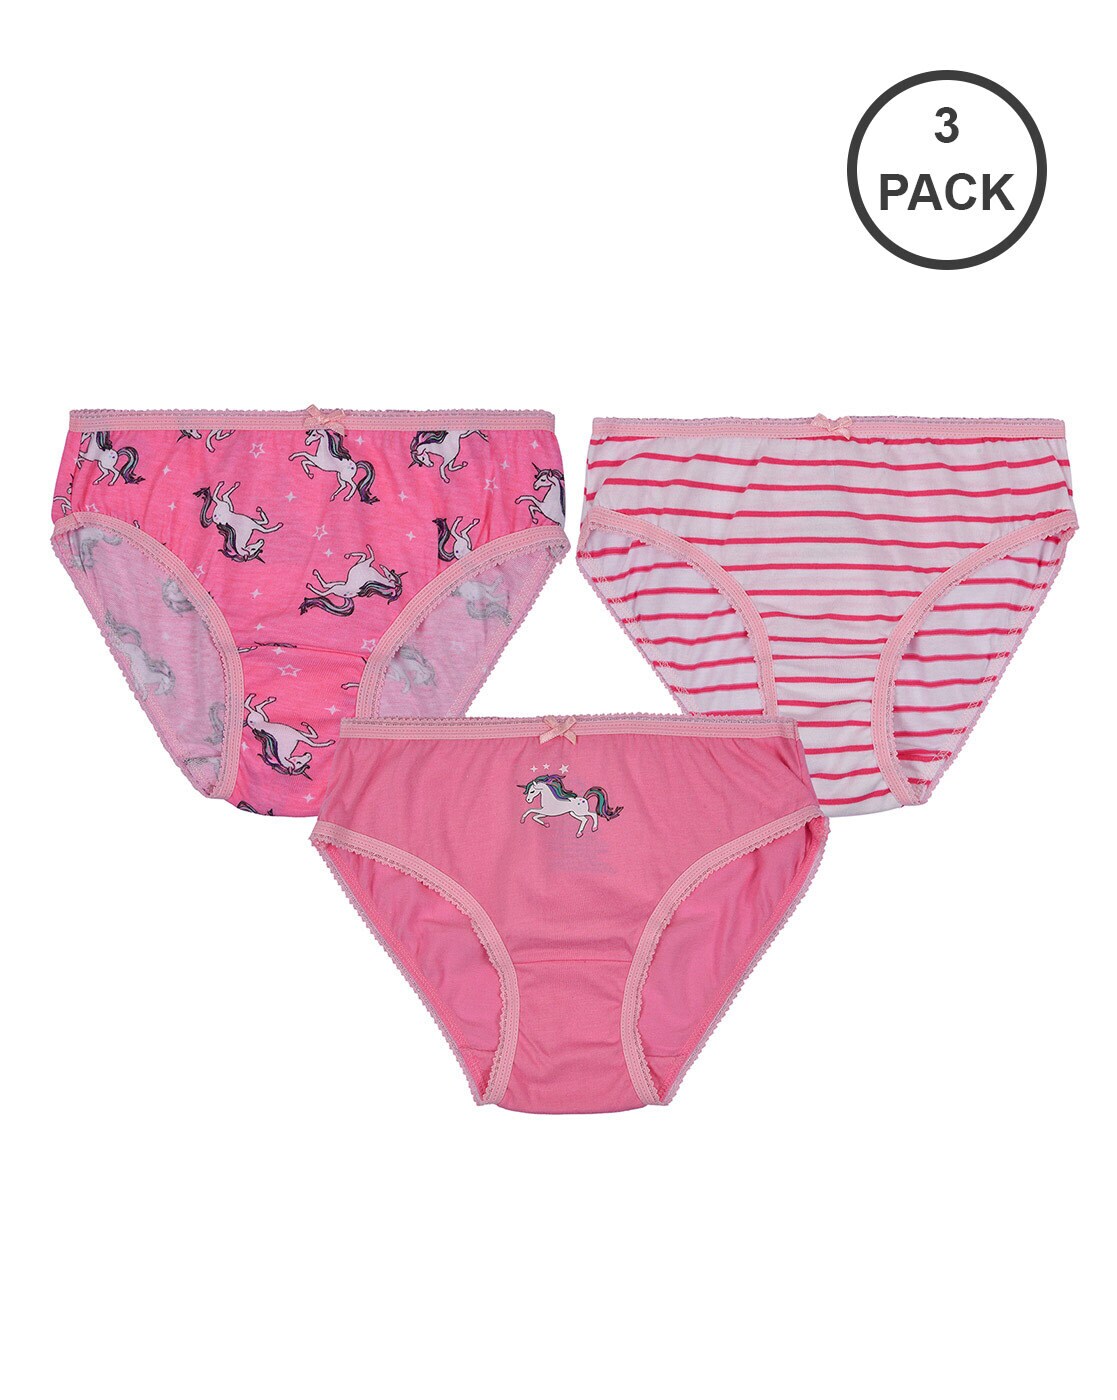 Ketyyh-chn99 Underwear for Girls Girls Panties Underwear for Teens Cotton  Briefs Pink,100